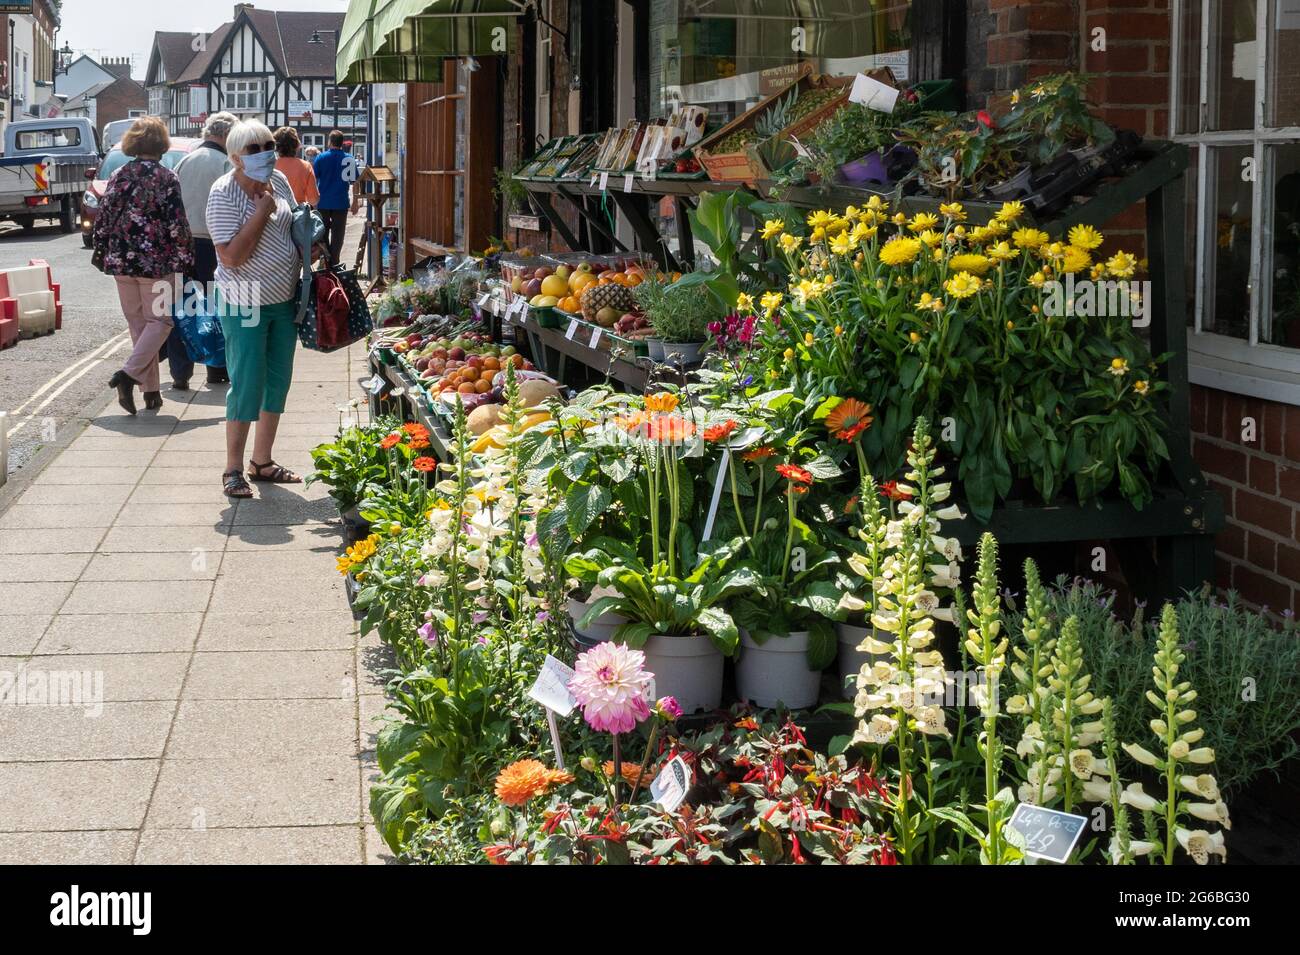 Menschen, die während der Pandemie Covid-19, Juli 2021, in einem Gemüsehändler und einem Blumengeschäft im Stadtzentrum von Emsworth, Hampshire, England, einkaufen Stockfoto